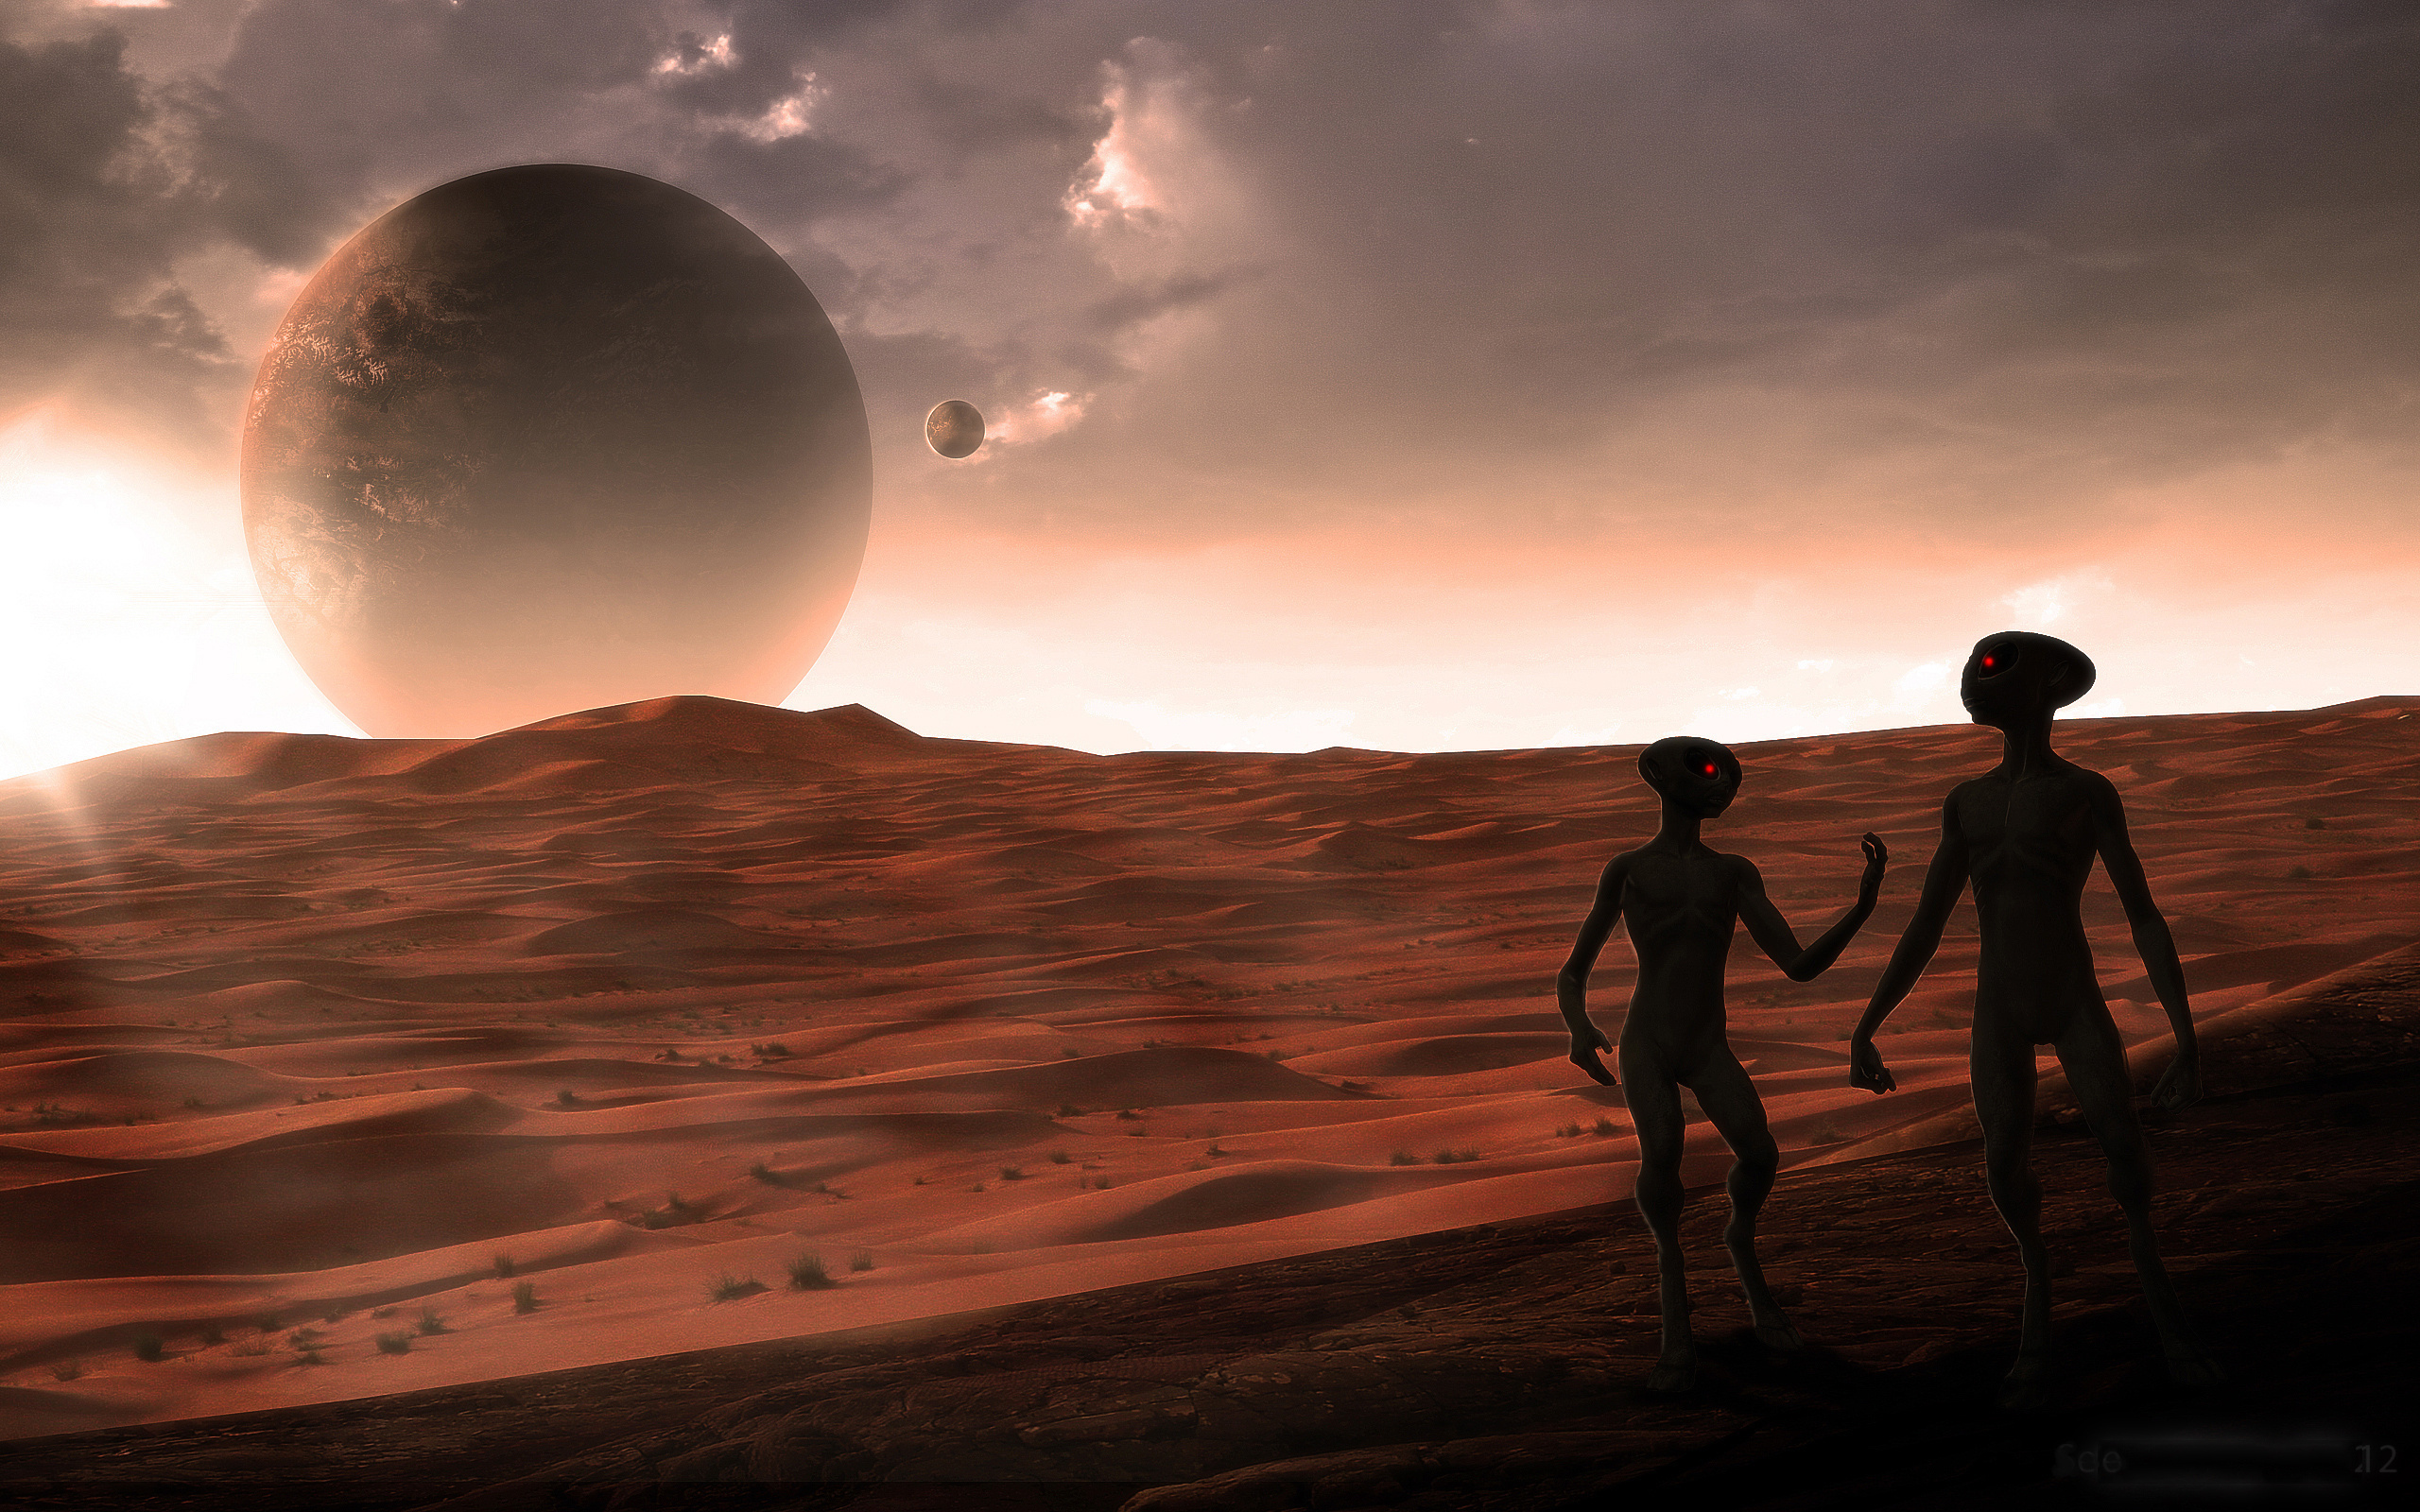 Una raza alienígena gigante habitó Marte en el pasado (Video)